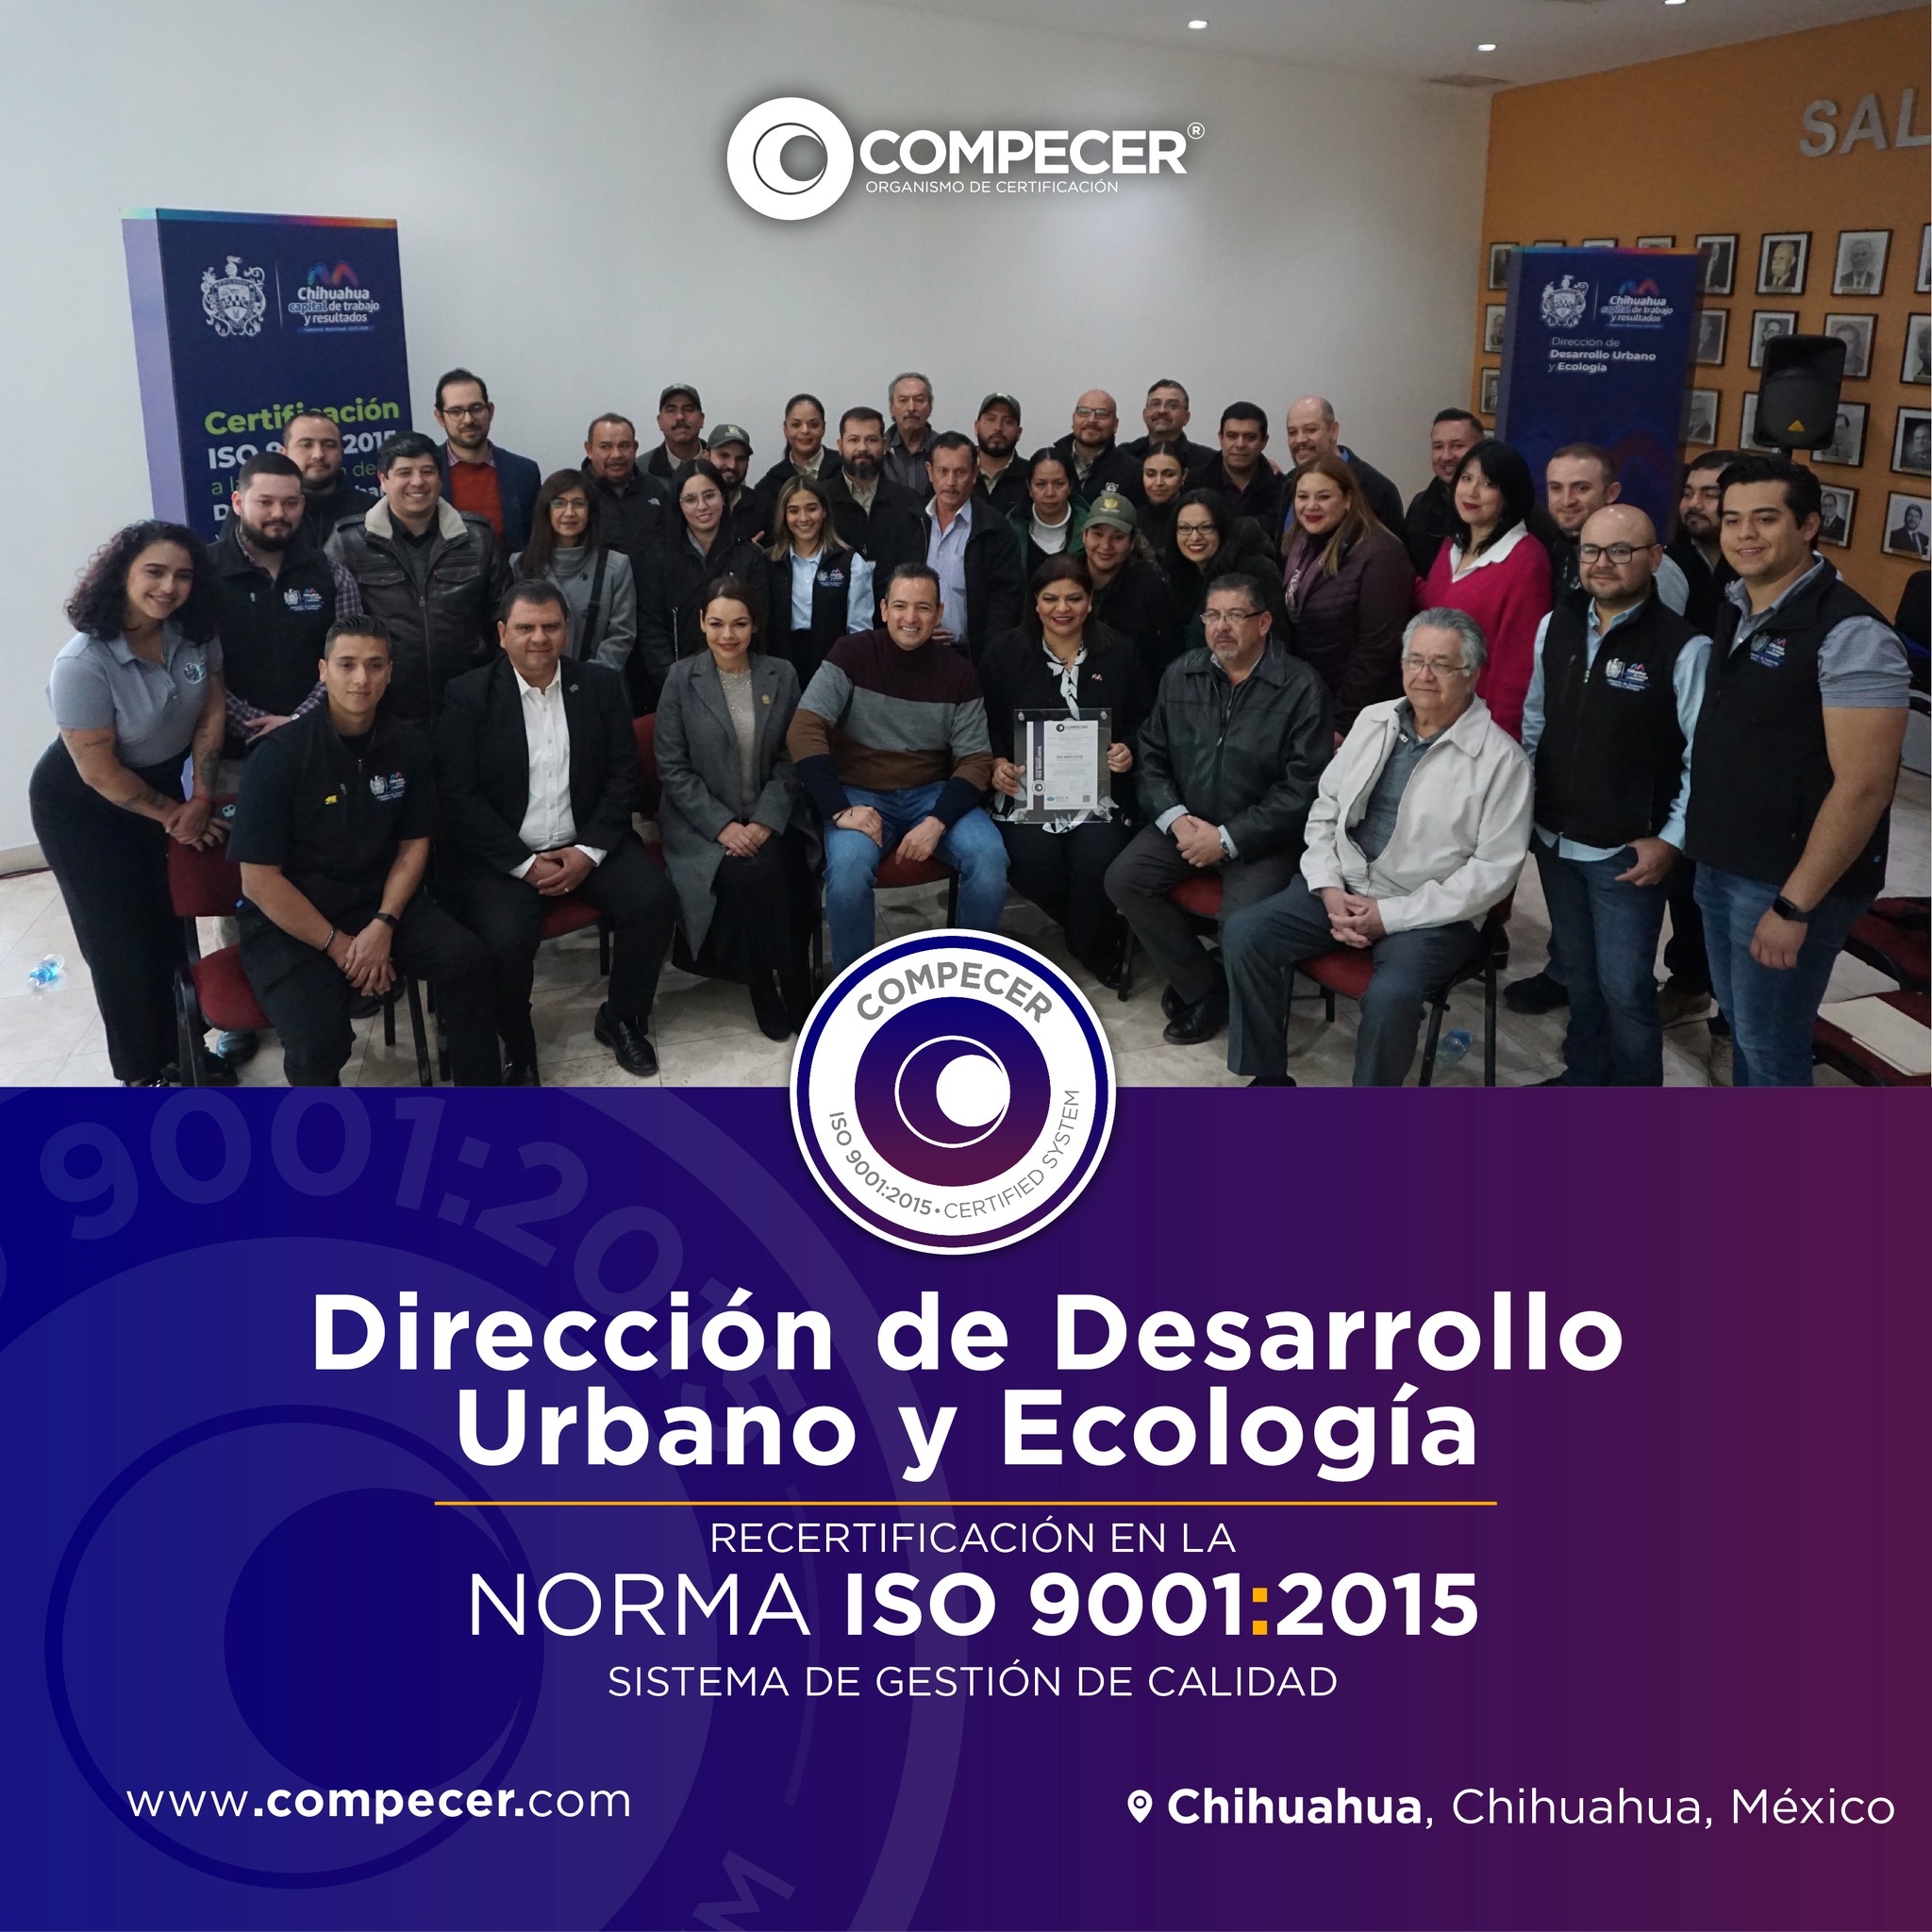 Dirección de Desarrollo Urbano y Ecología en Chihuahua